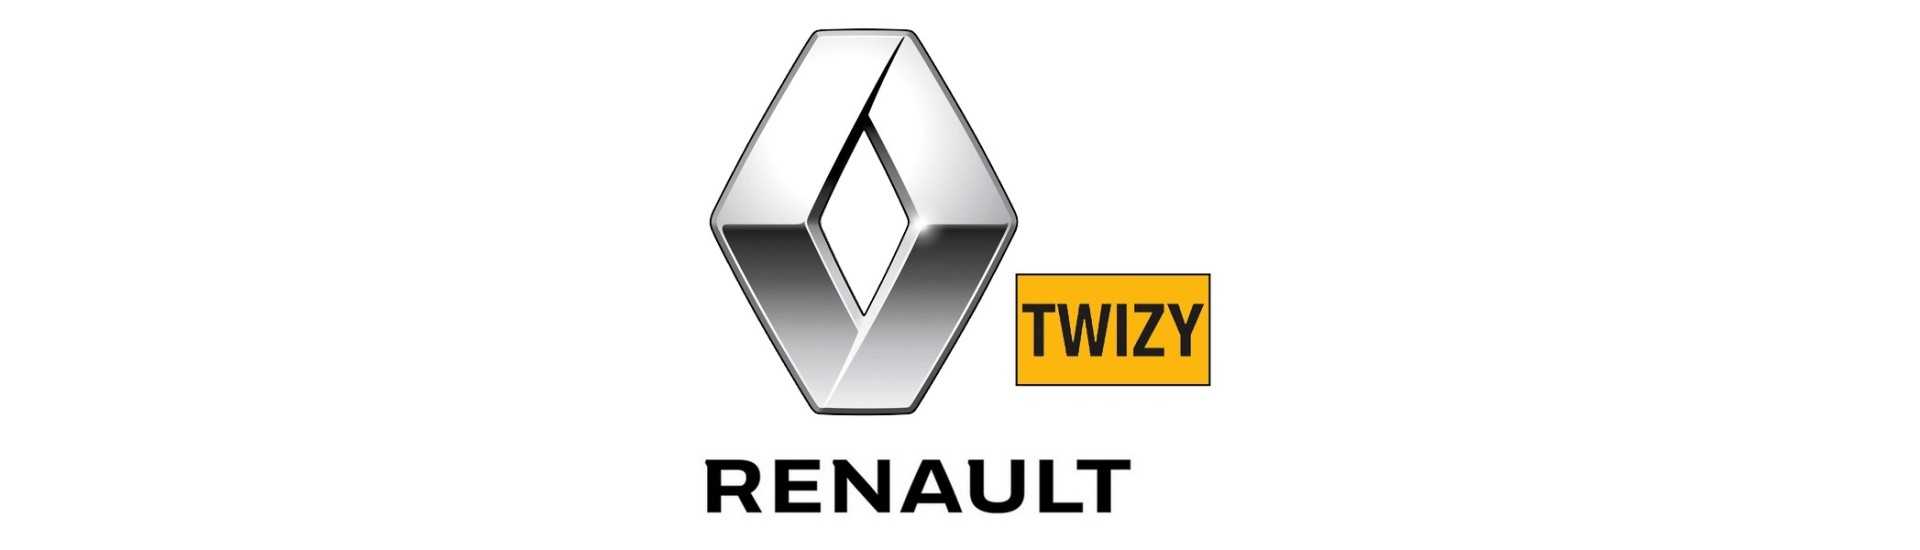 Motore elettrico al miglior prezzo per auto senza permesso Renault